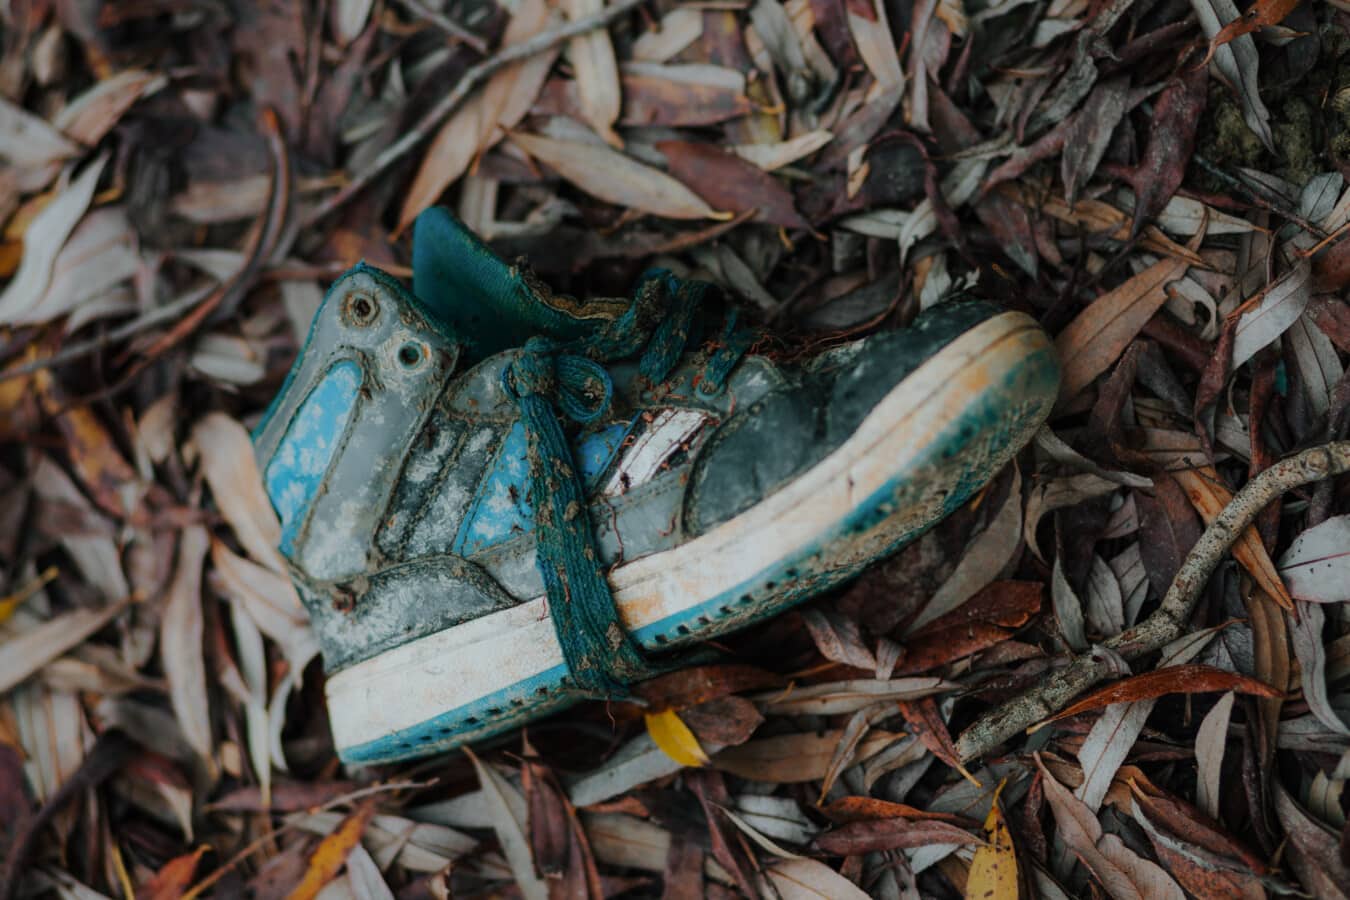 运动鞋, 脏, 垃圾, 垃圾, 性质, 回收, 木材, 浪费, 老, 放弃